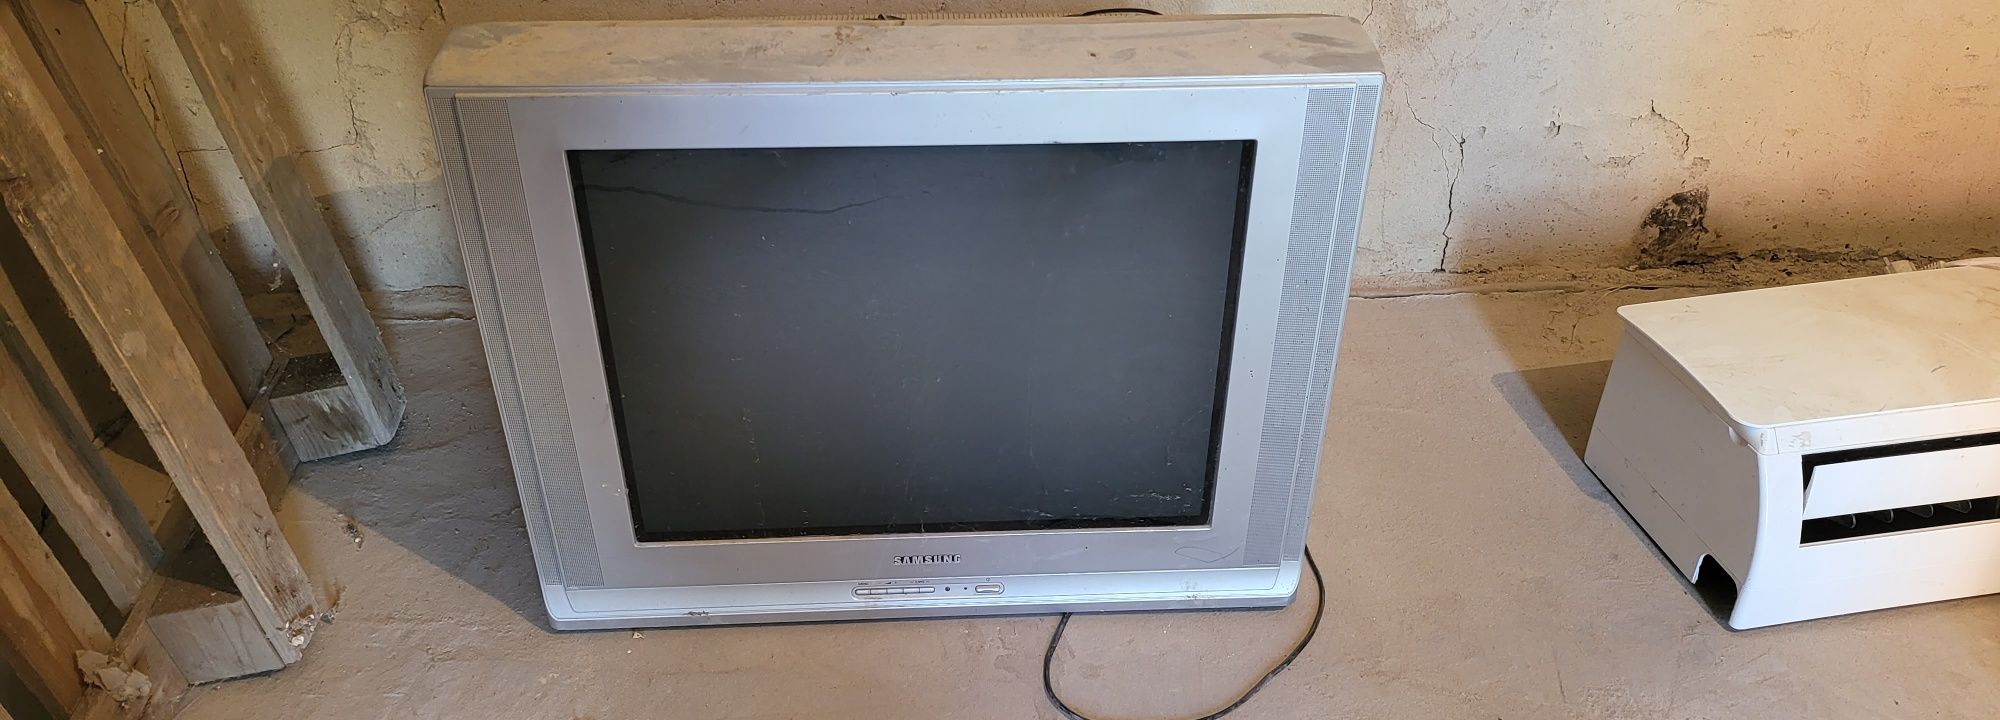 Продаётся старый телевизор  за 10 000 тенге торг есть